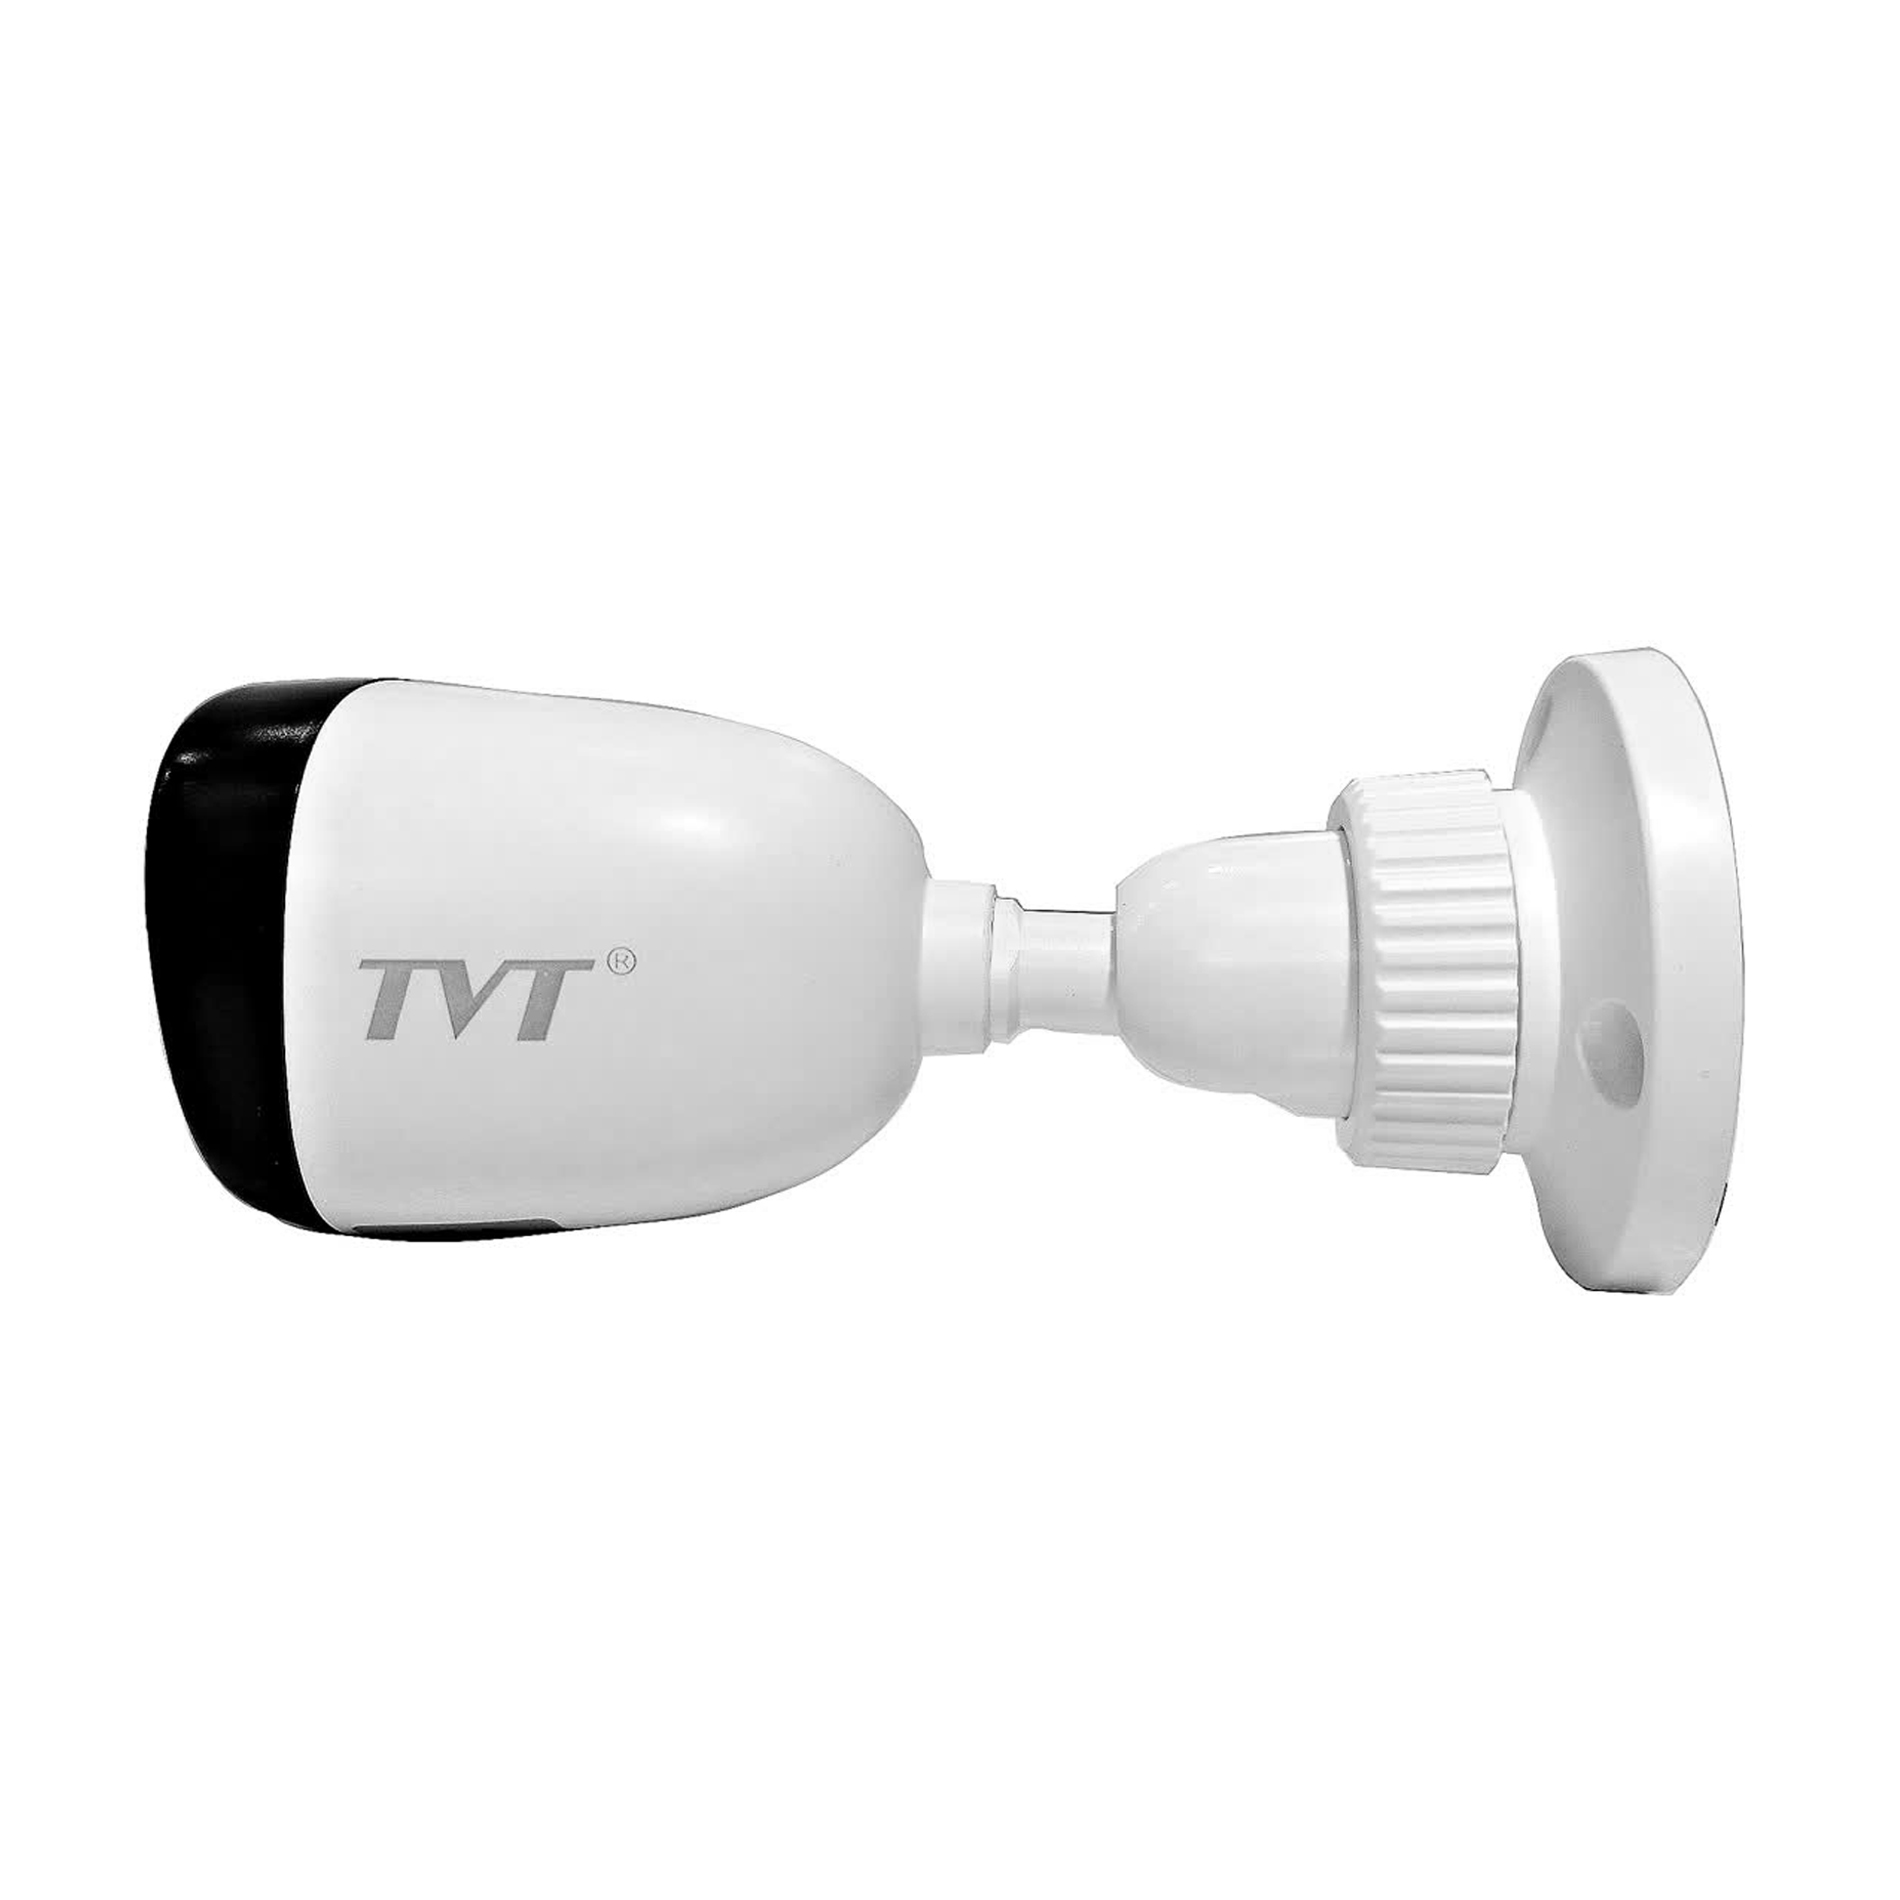 دوربین تی وی تی TVT TD-7420AS1